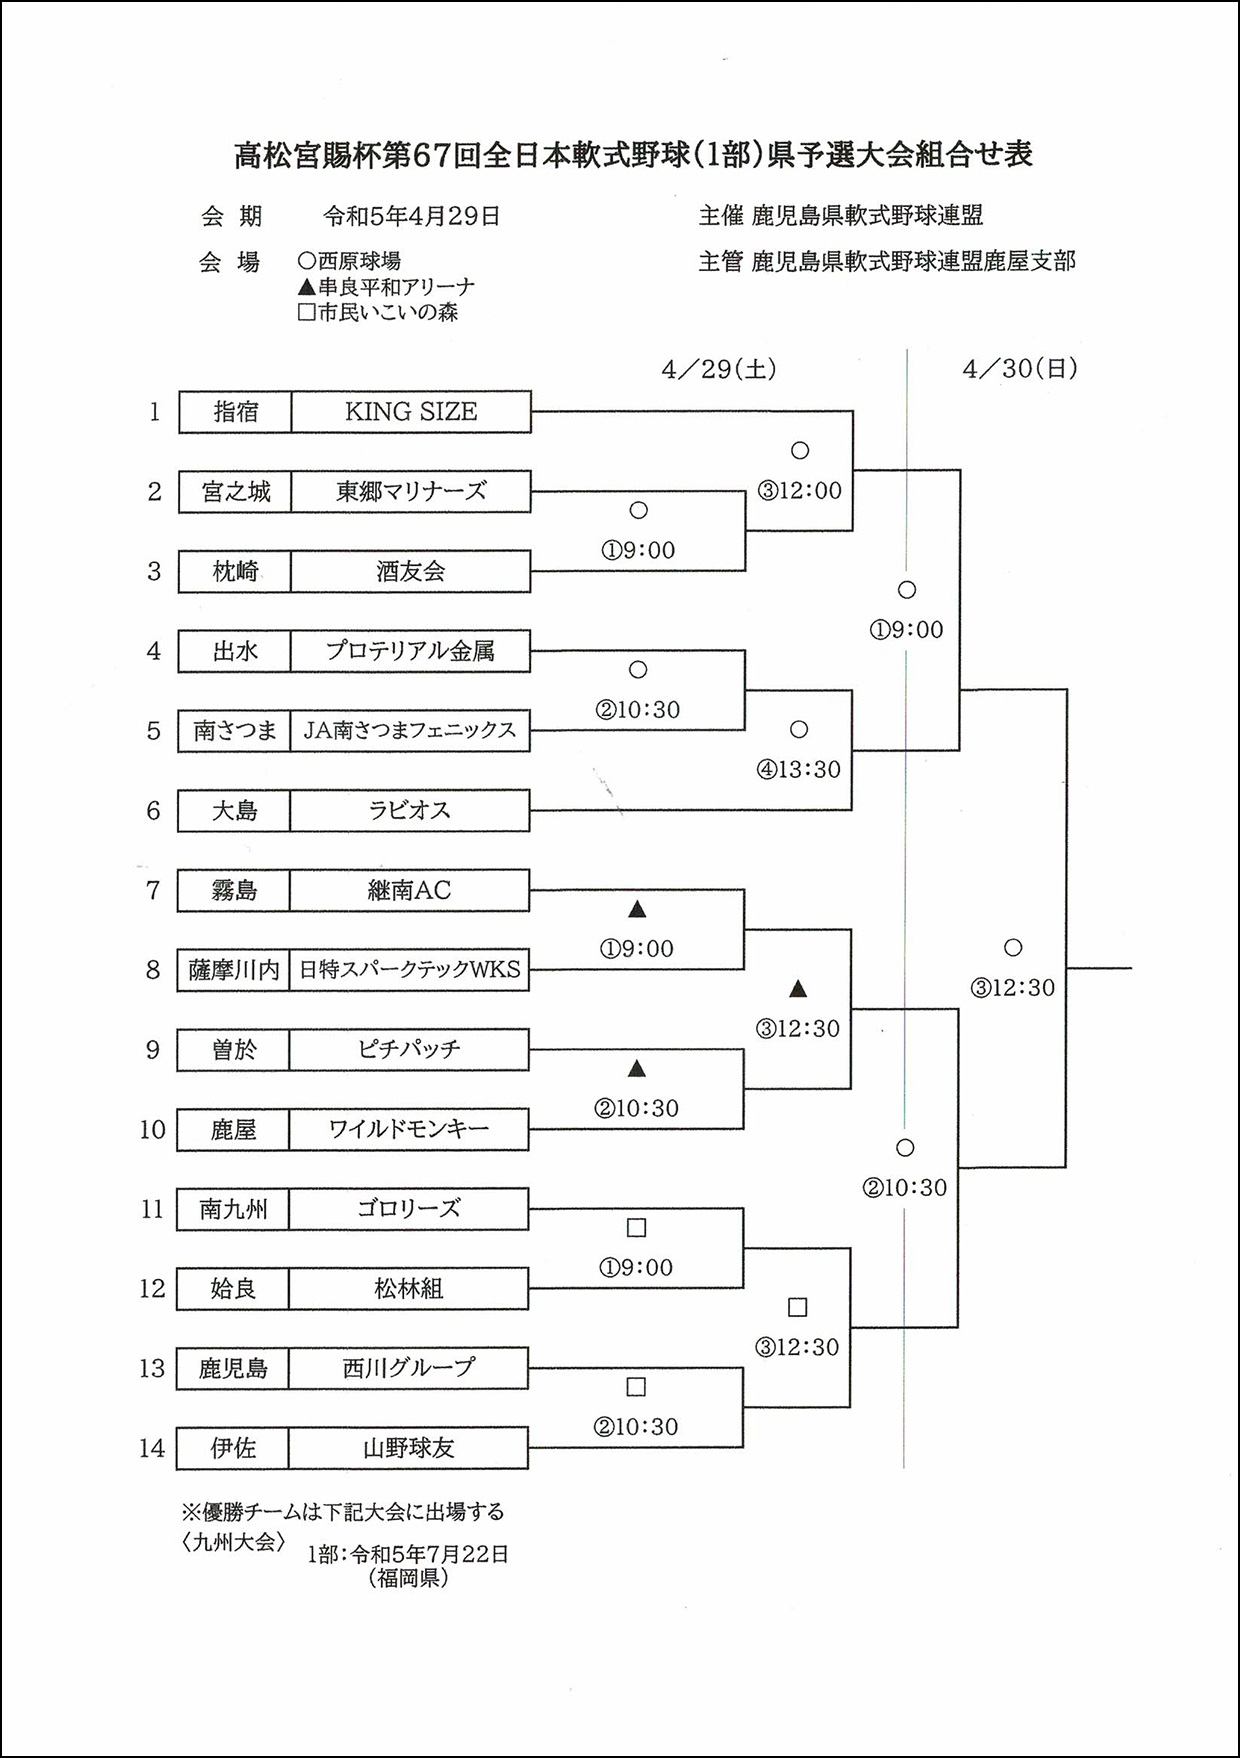 【組合せ】第67回全日本軟式野球（1部）県予選大会